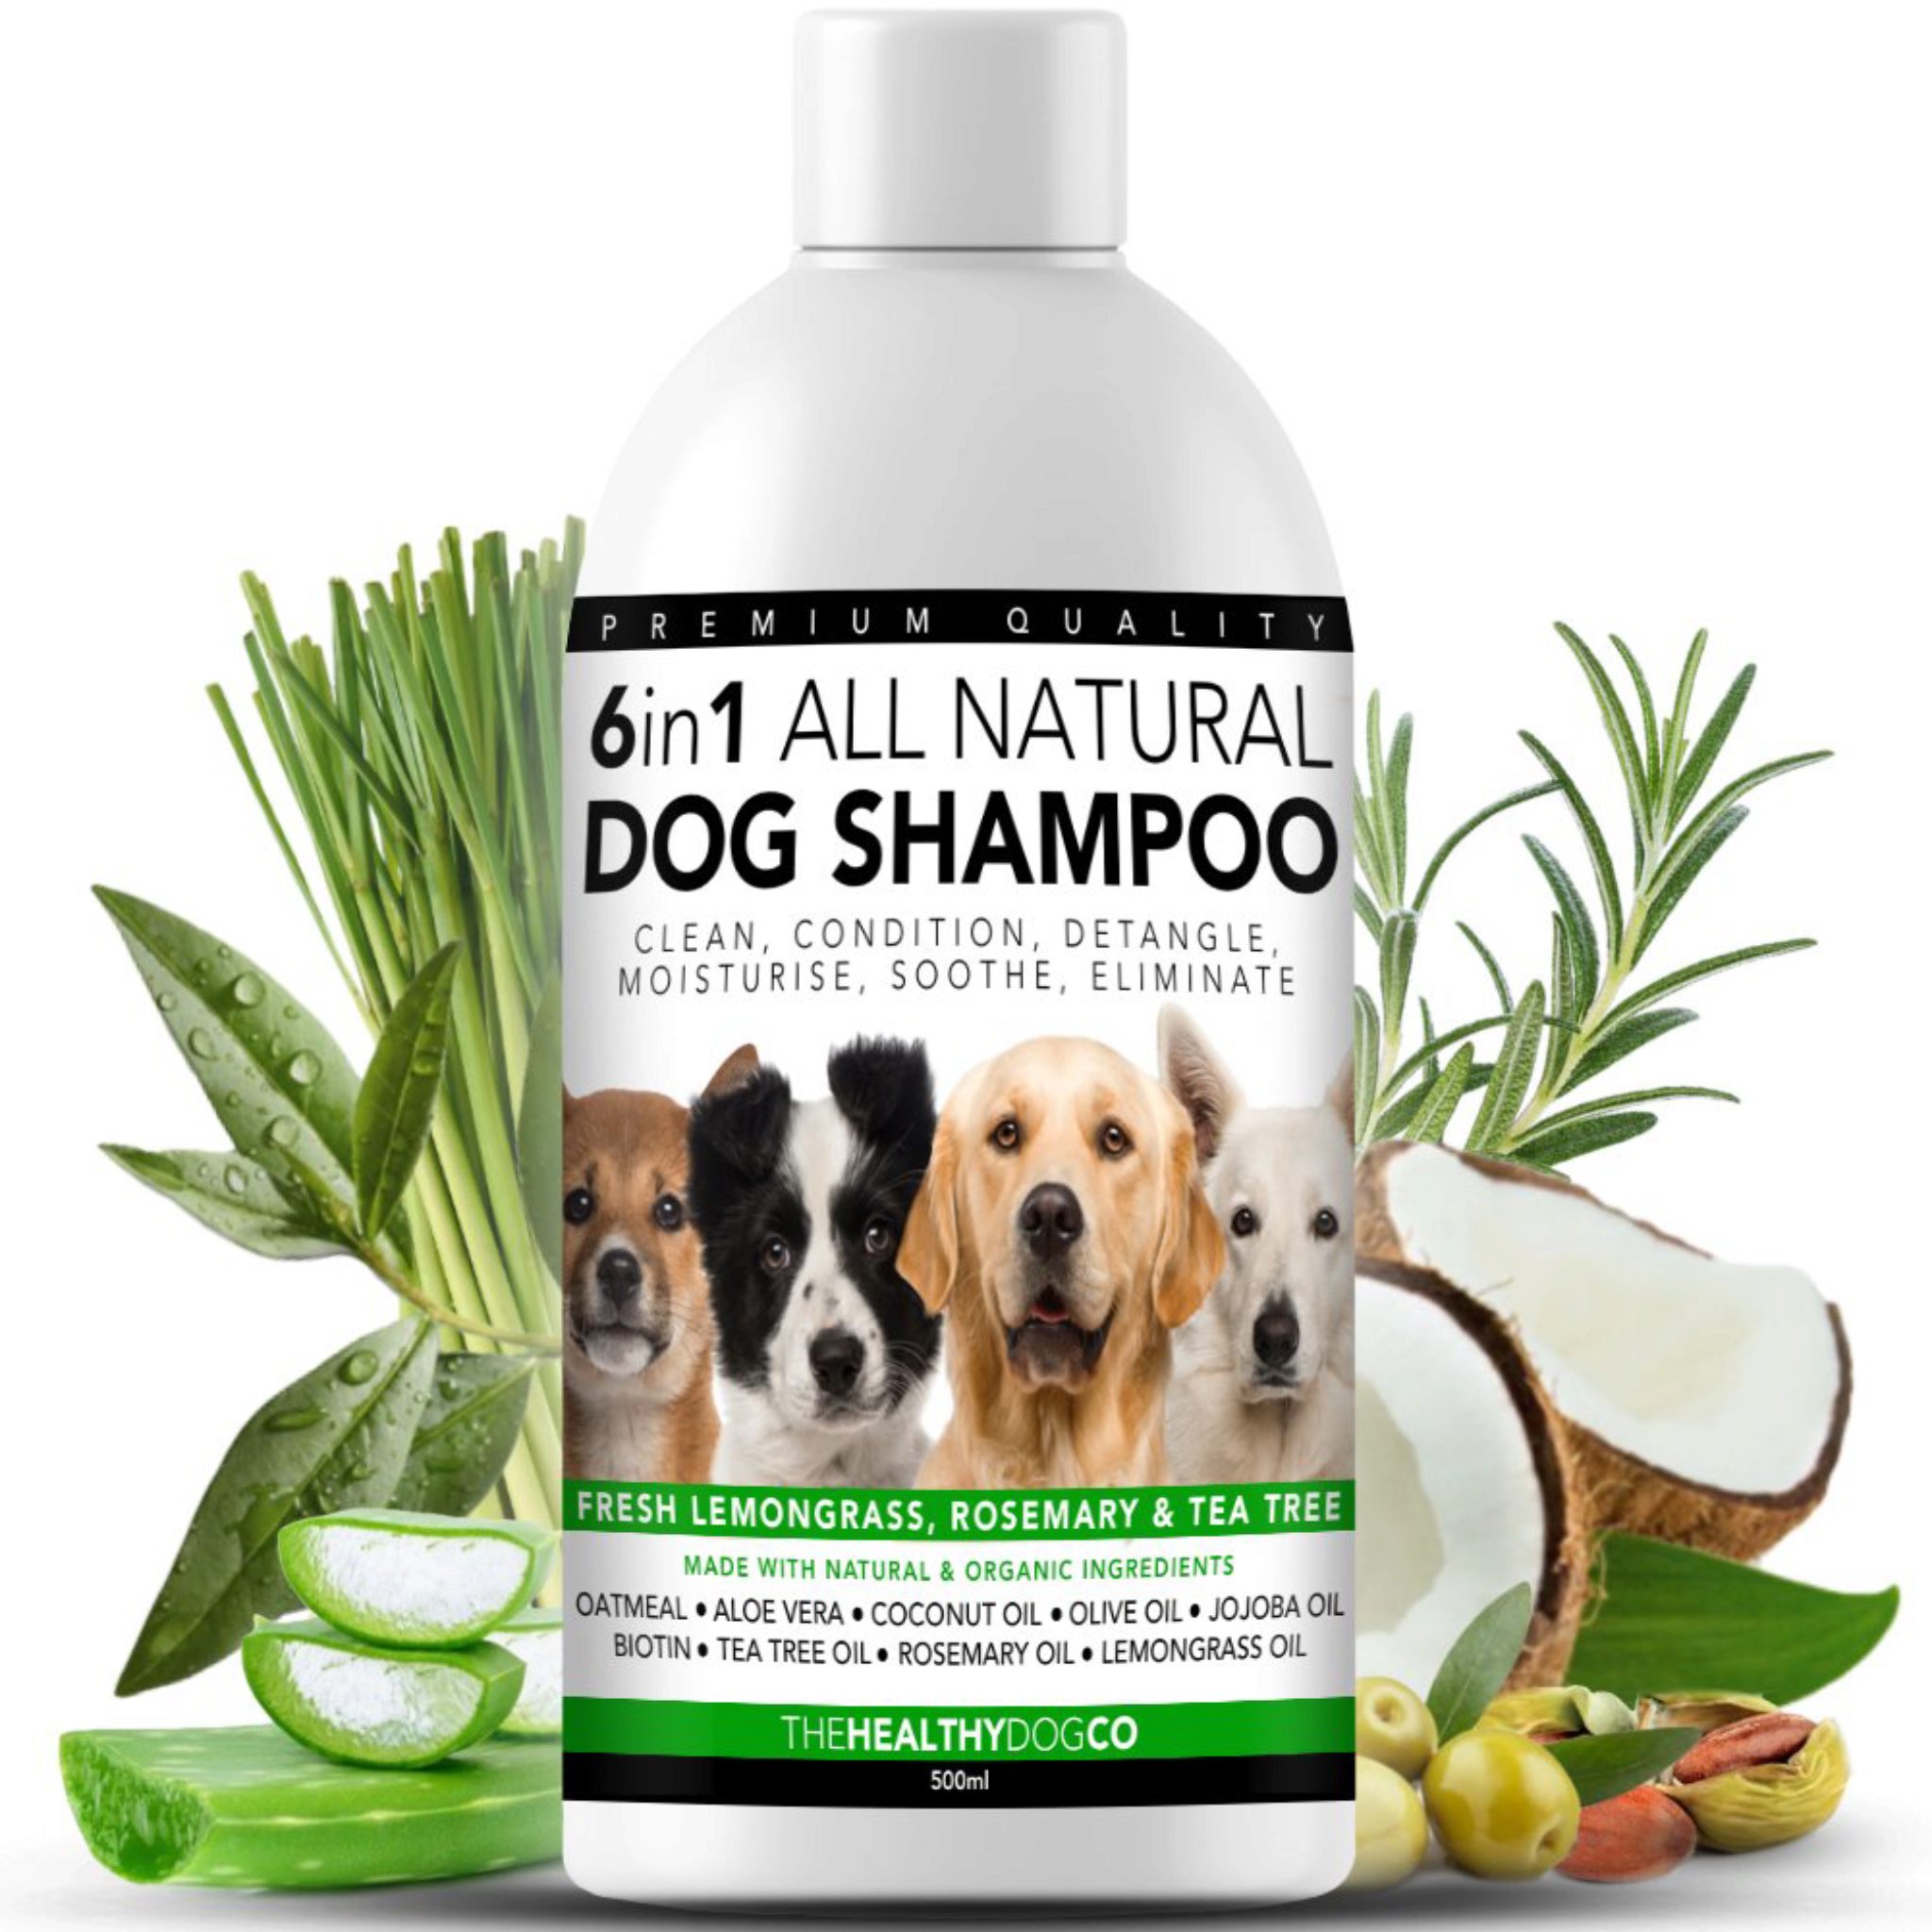 I 5 Migliori Shampoo Antifungini Per Cani